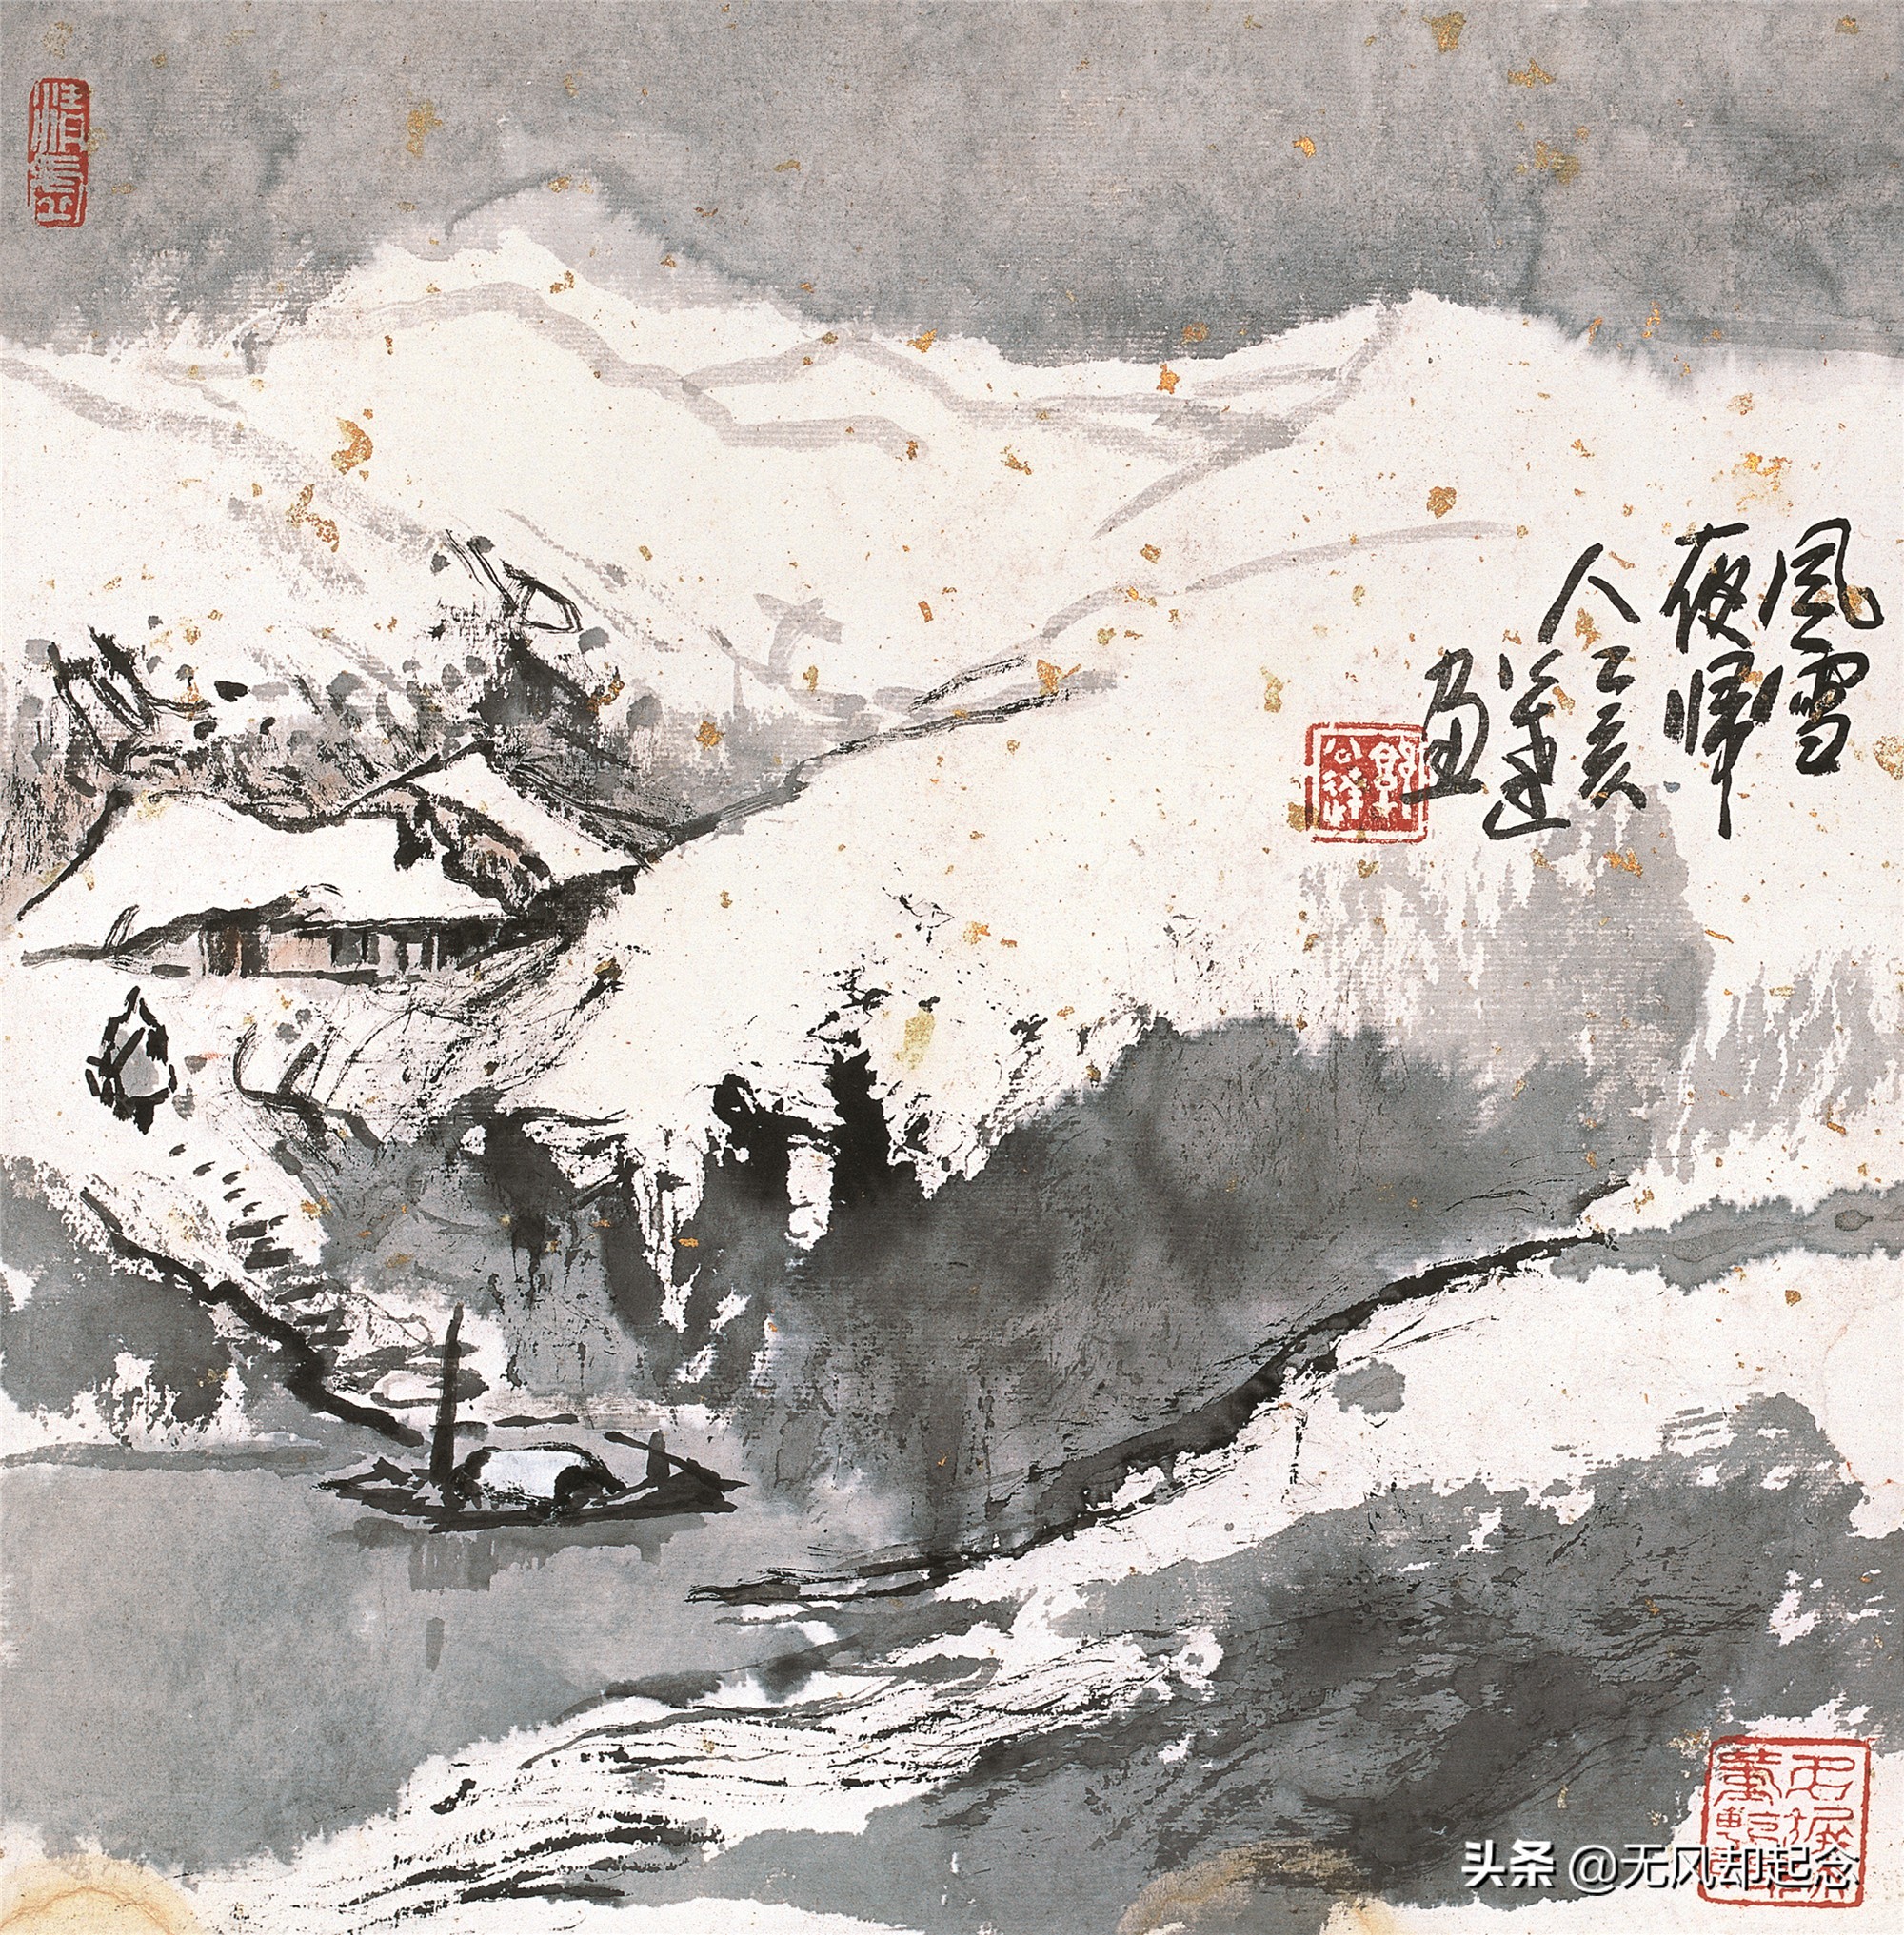 史上最绝的咏雪诗，只有短短20字，却形象描绘出雪夜人归的画面